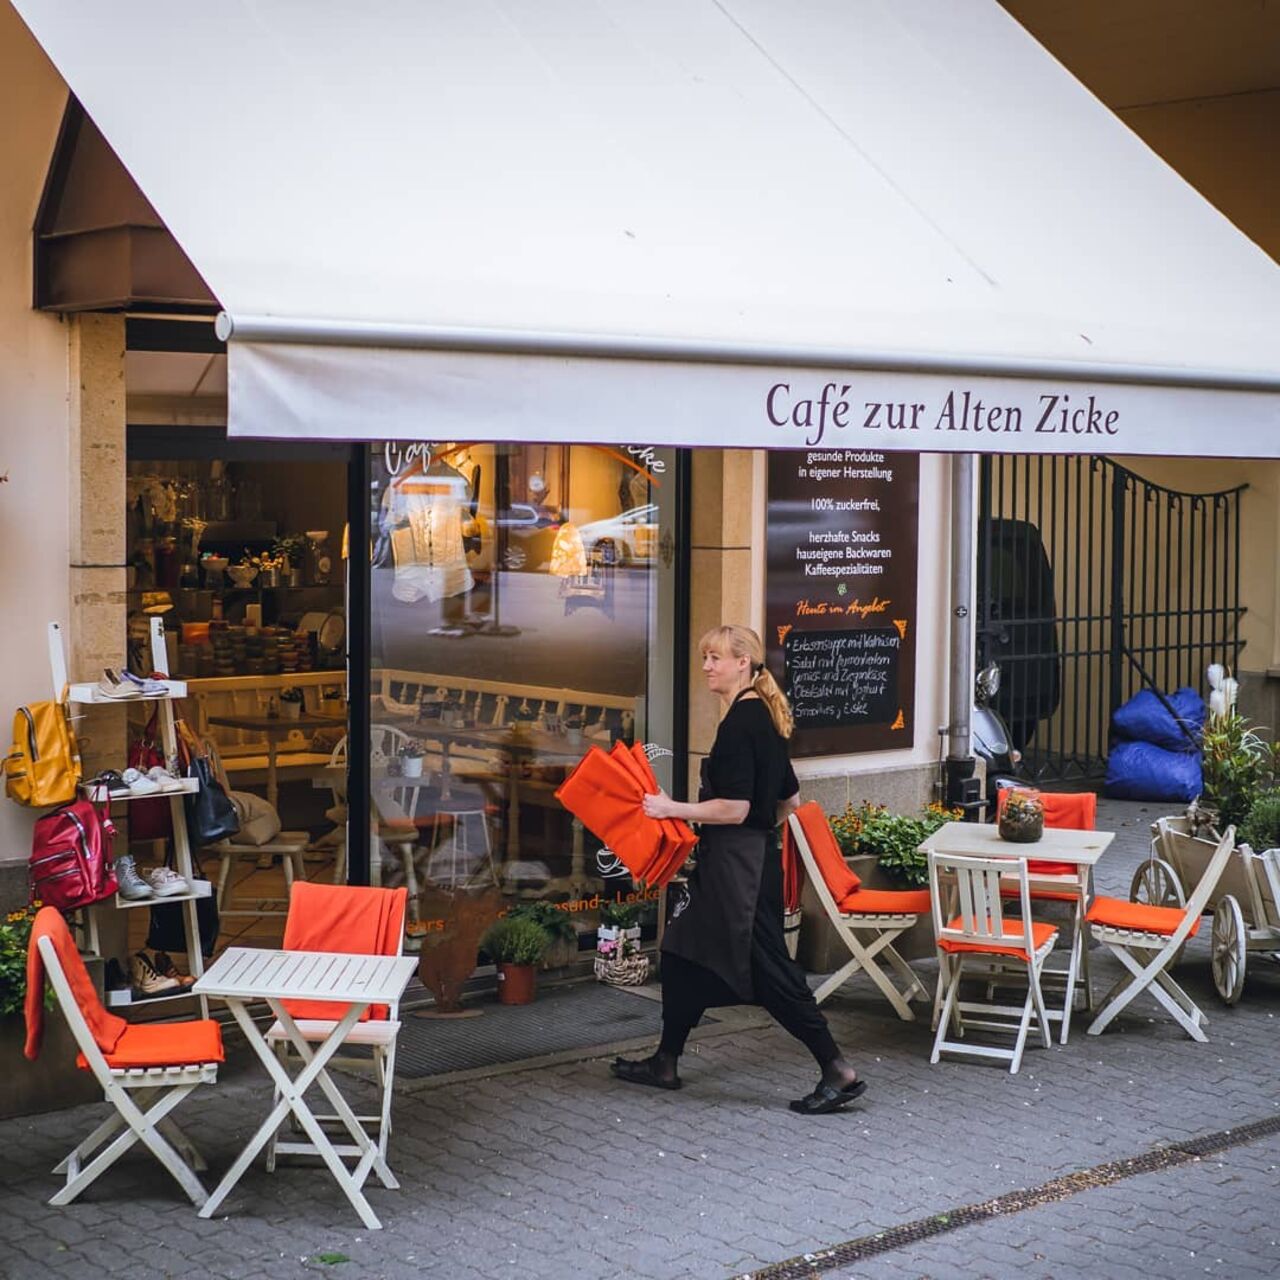 A photo of Café zur Alten Zicke